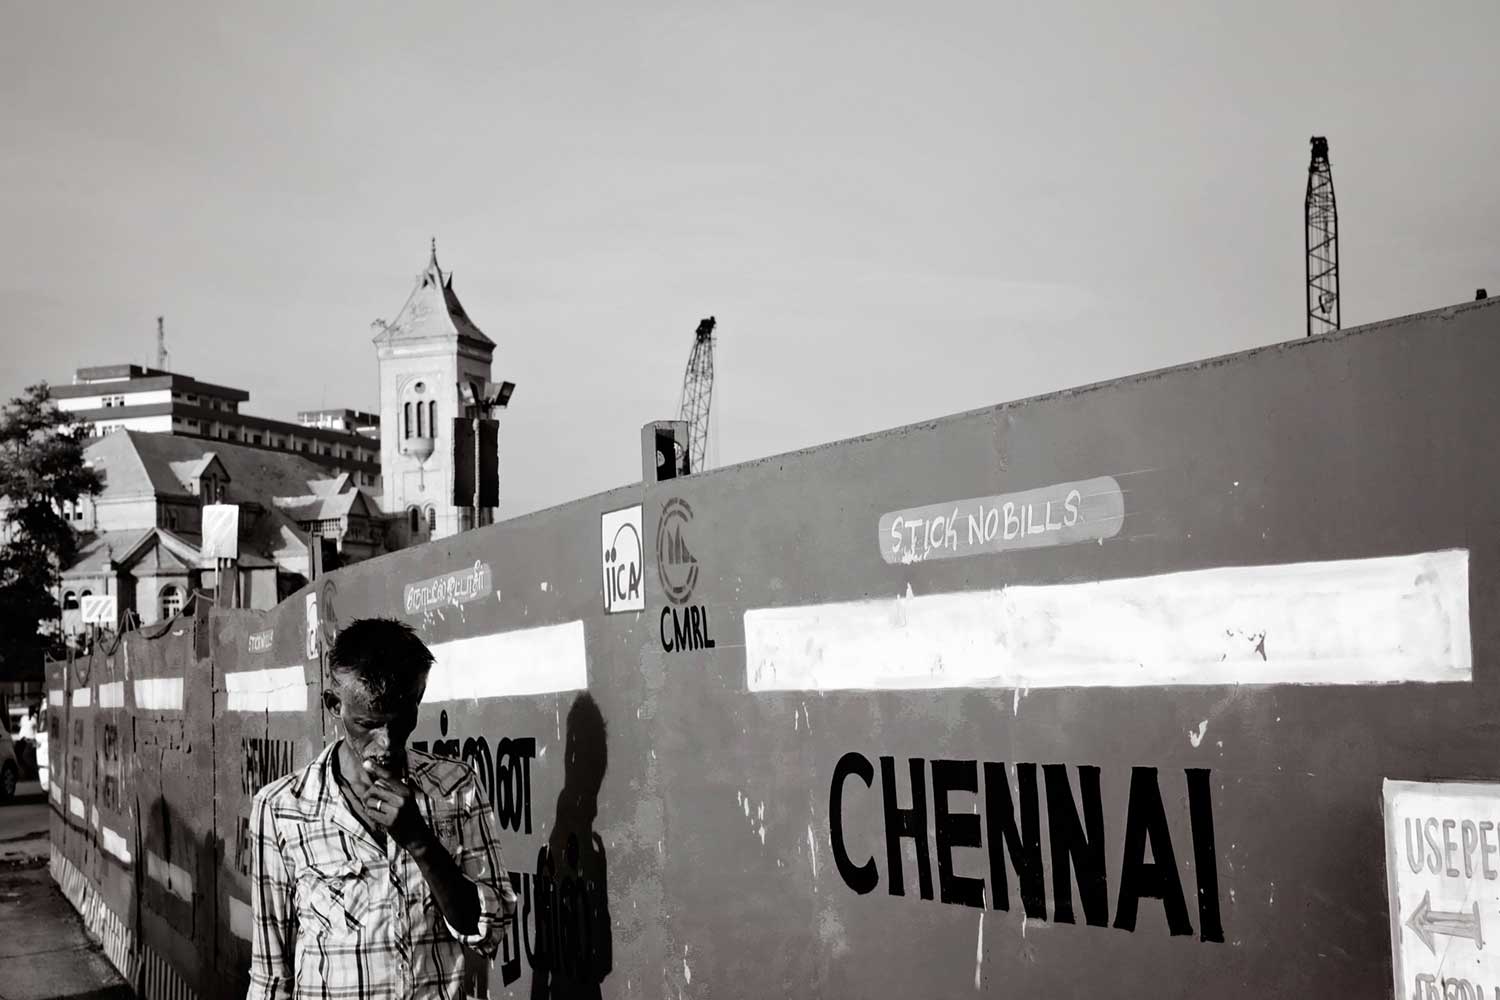 Chennai, the city of dreams by Amlan Sanyal